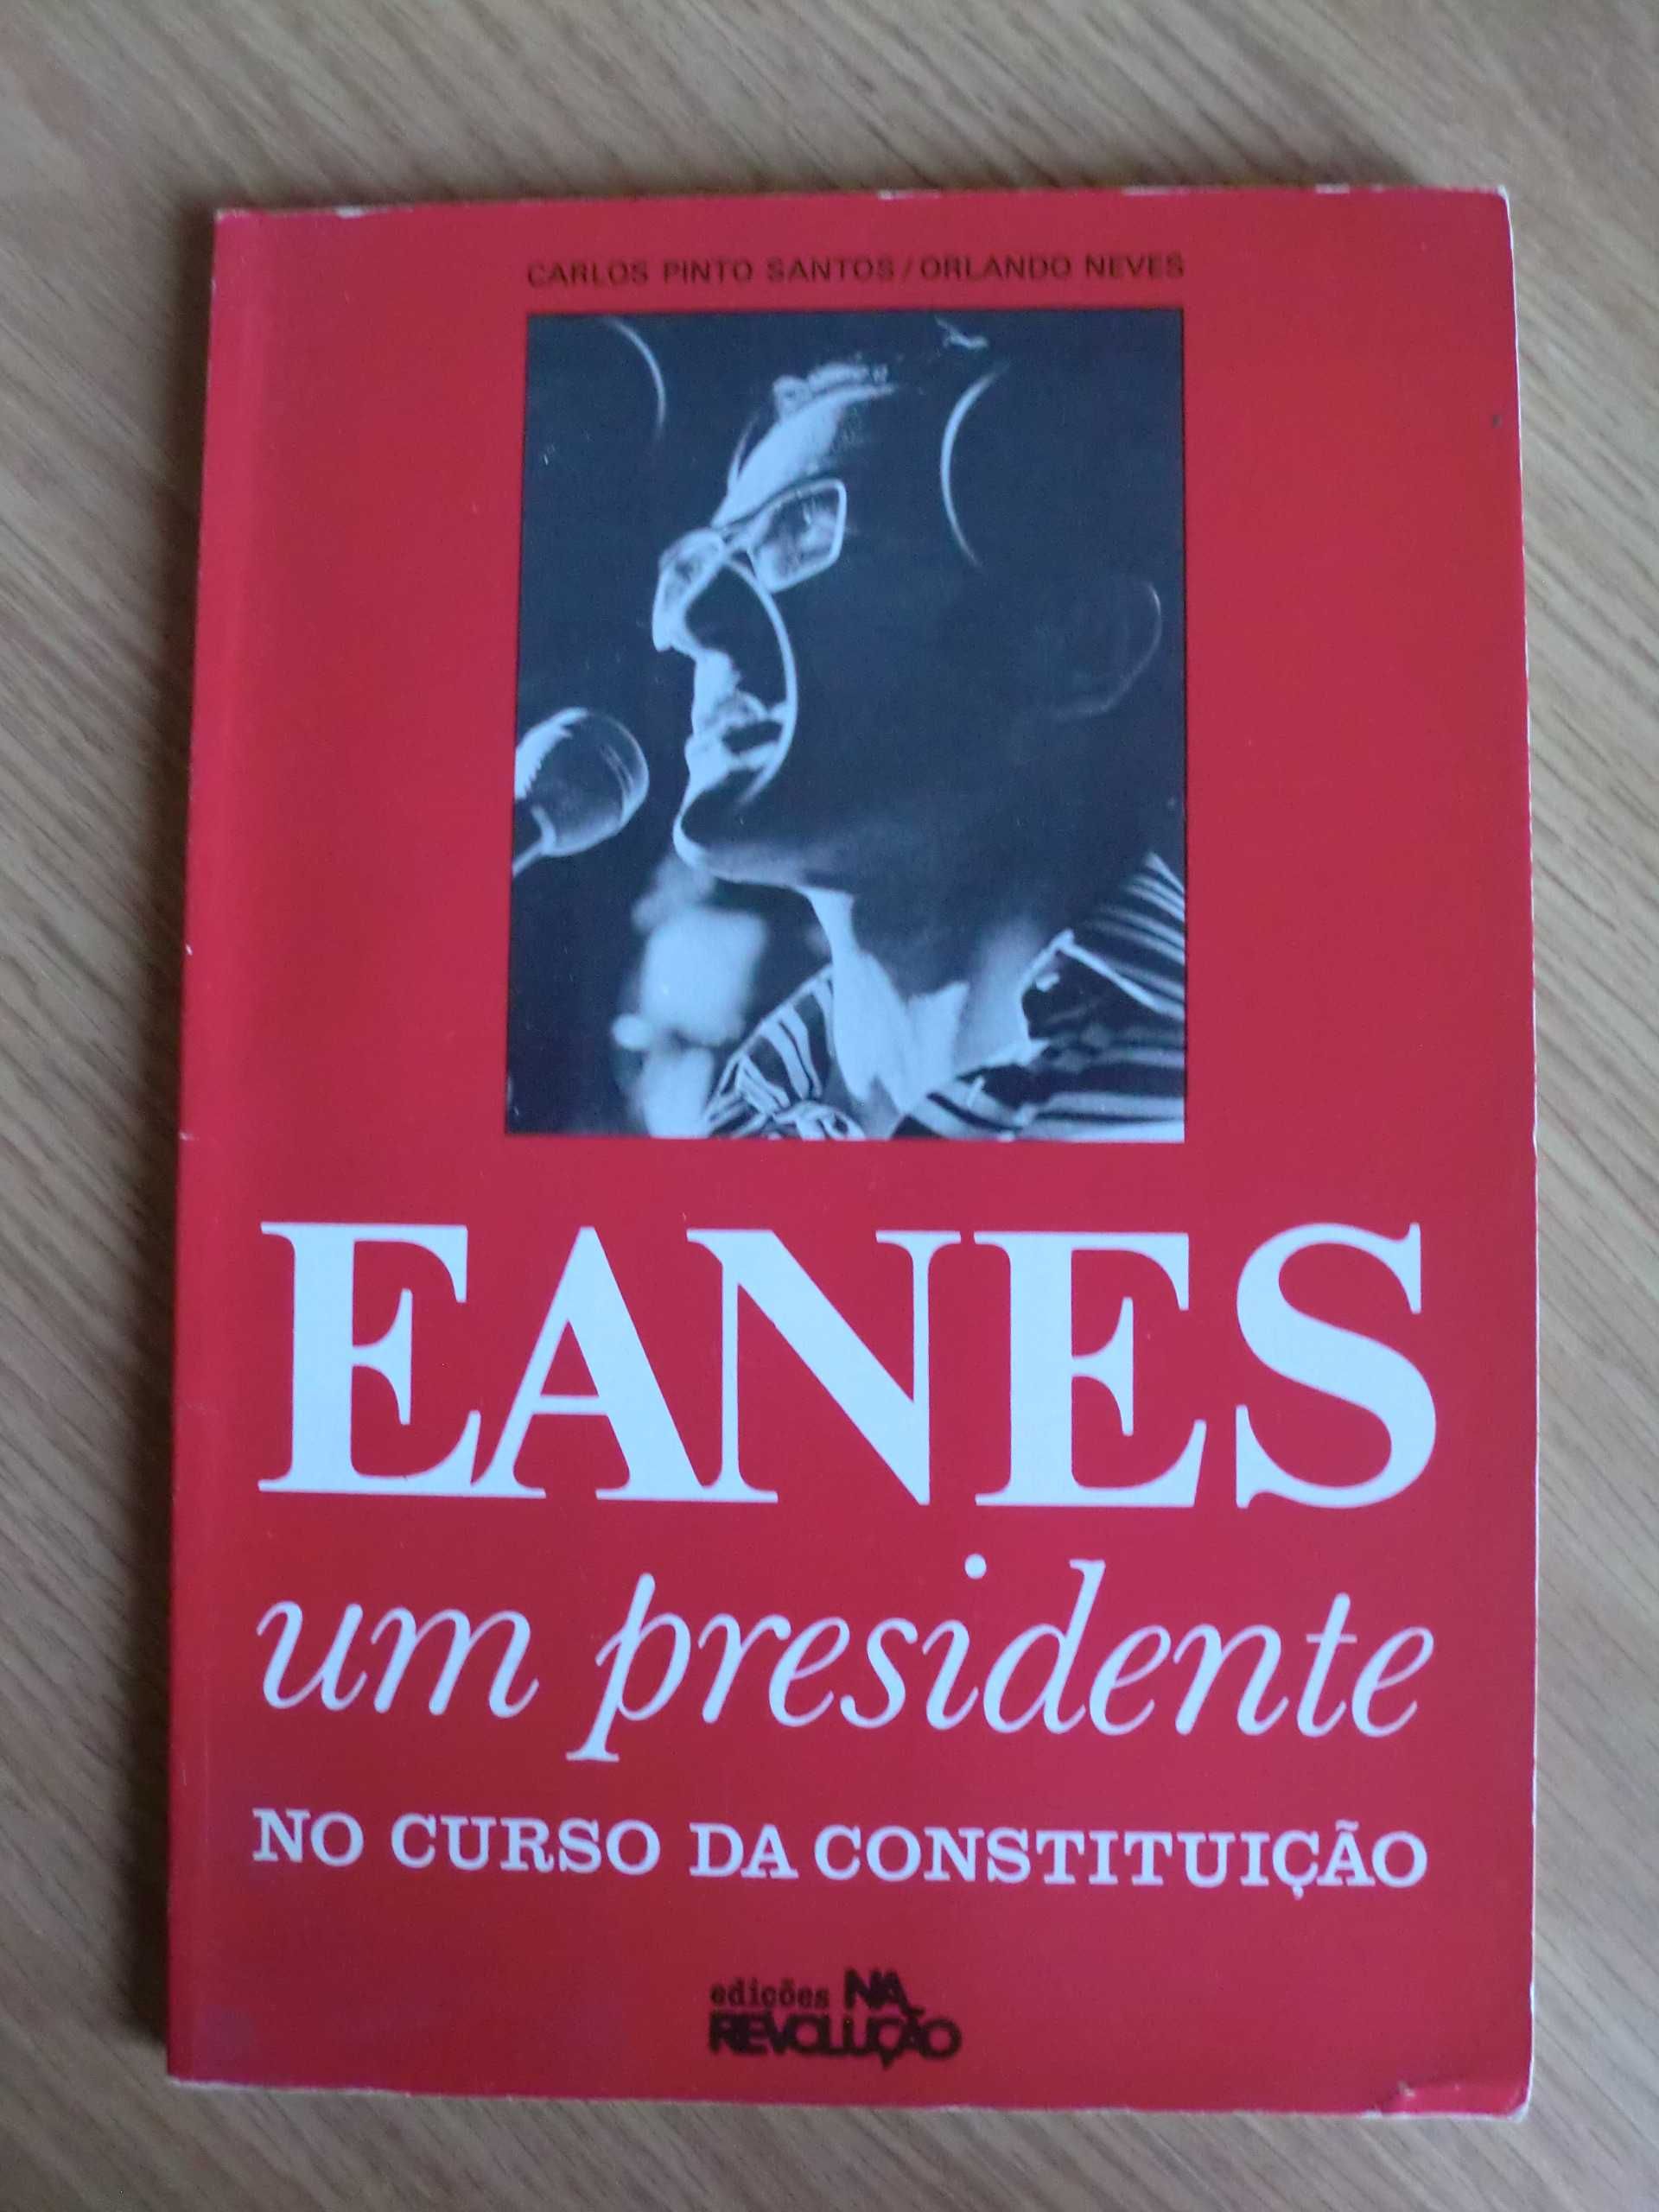 Eanes, um Presidente no curso da Constituição
de Carlos Pinto Santos